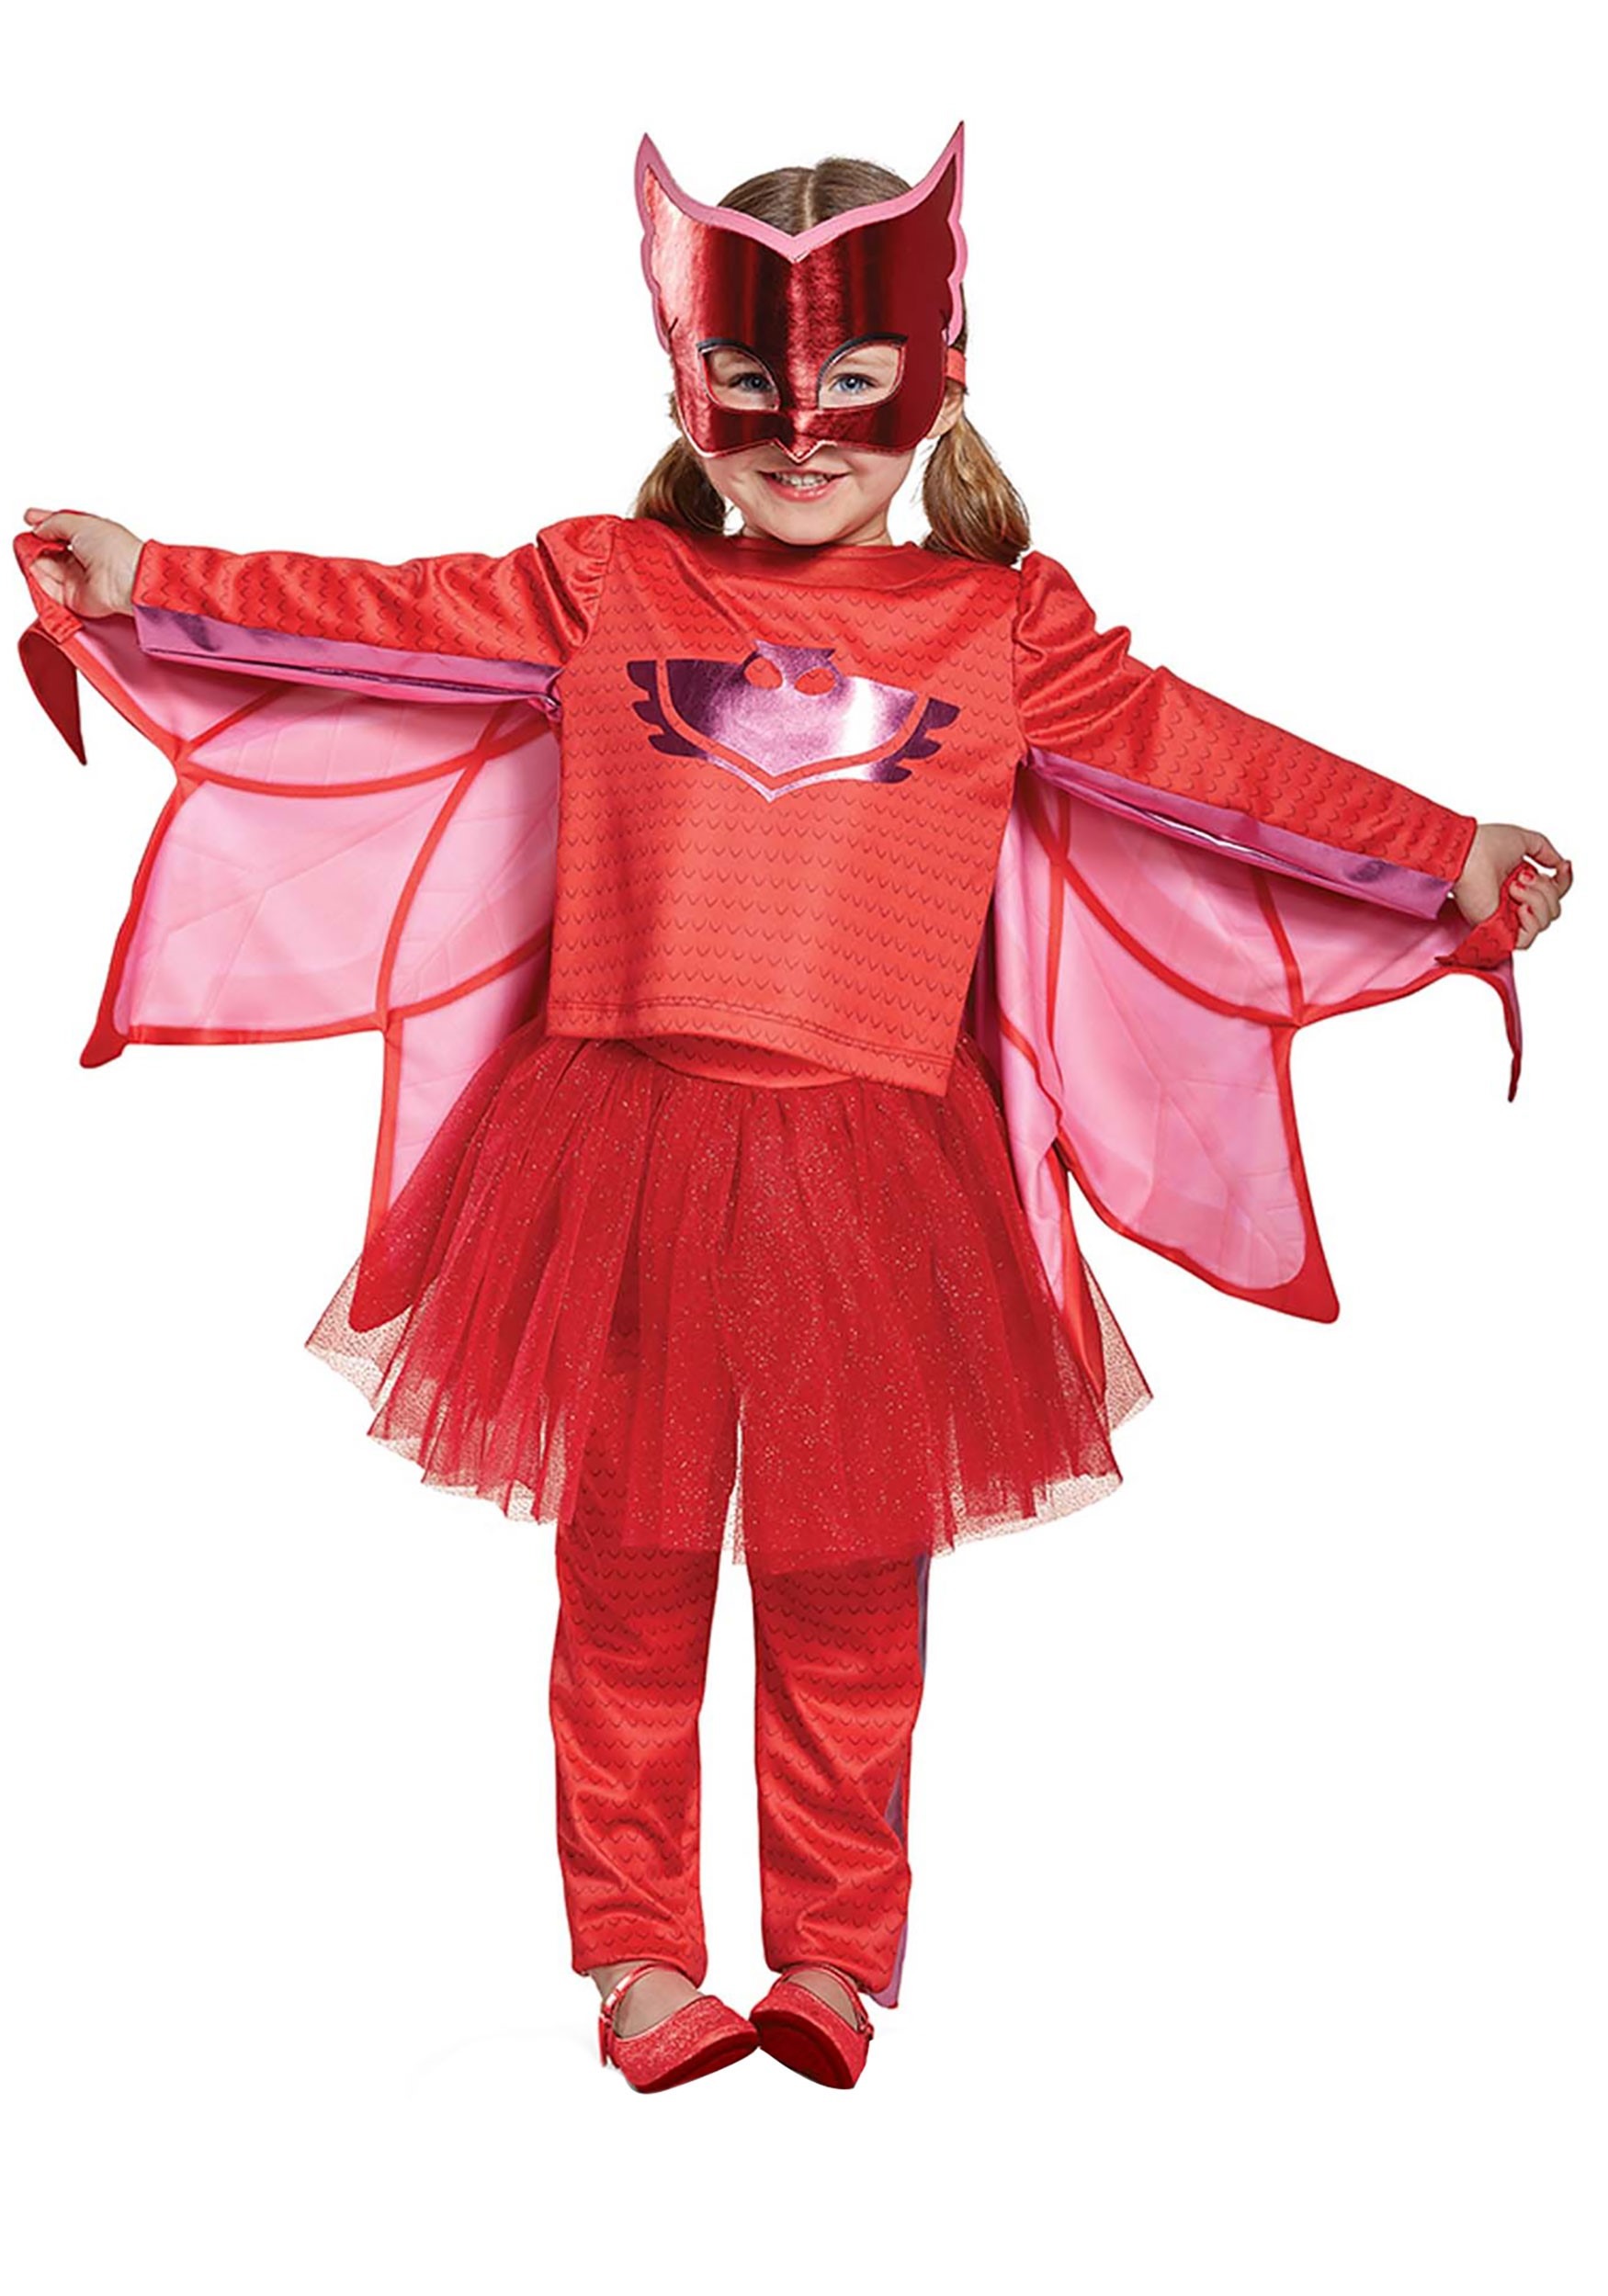 Pj Masks Classic Owlette Megasuit Costume For Toddler - vrogue.co